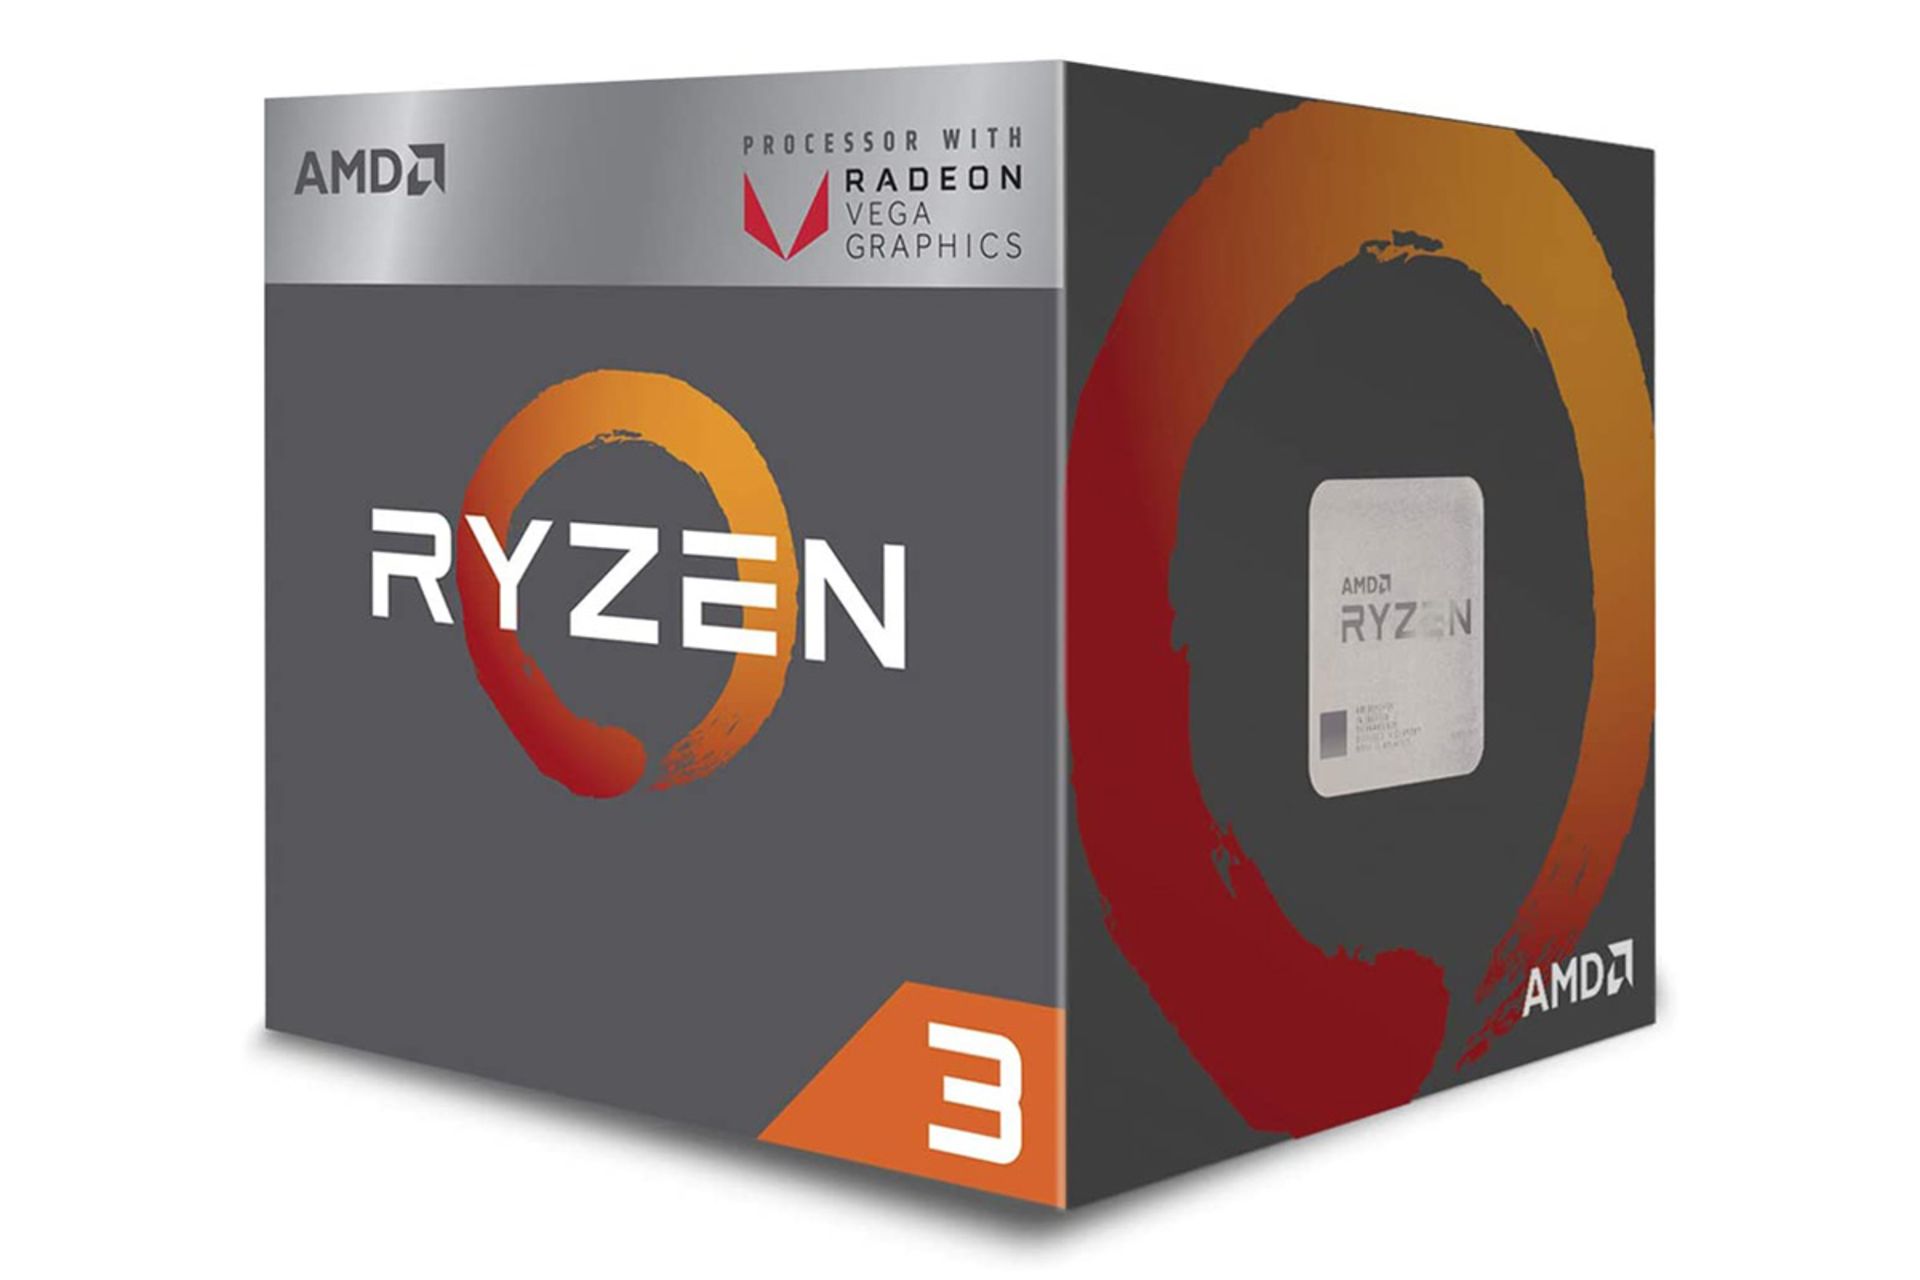 مرجع متخصصين ايران AMD Ryzen 3 3200G / رايزن 3